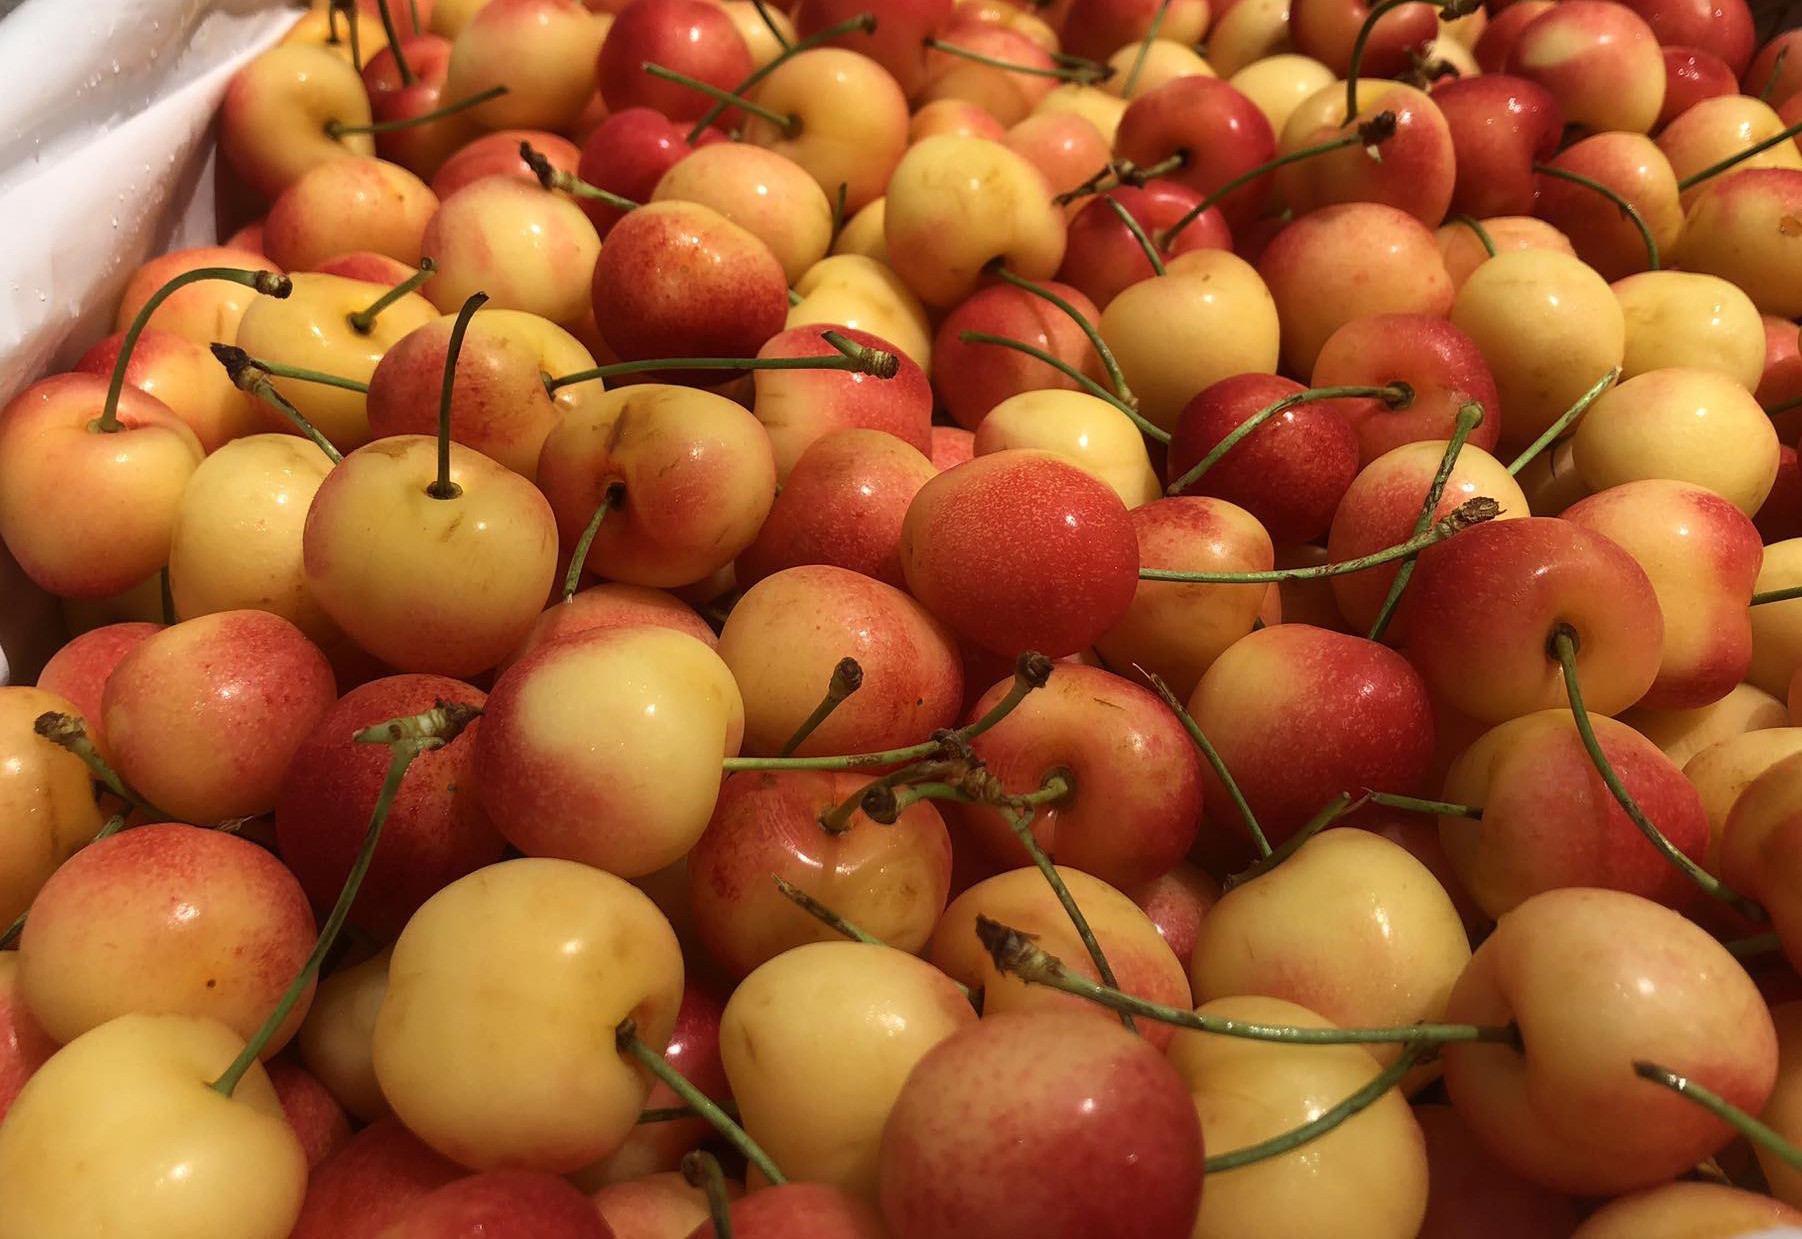 Cherry nhập khẩu bán đầy chợ Việt, hàng Mỹ giá rẻ chưa từng có - Ảnh 3.